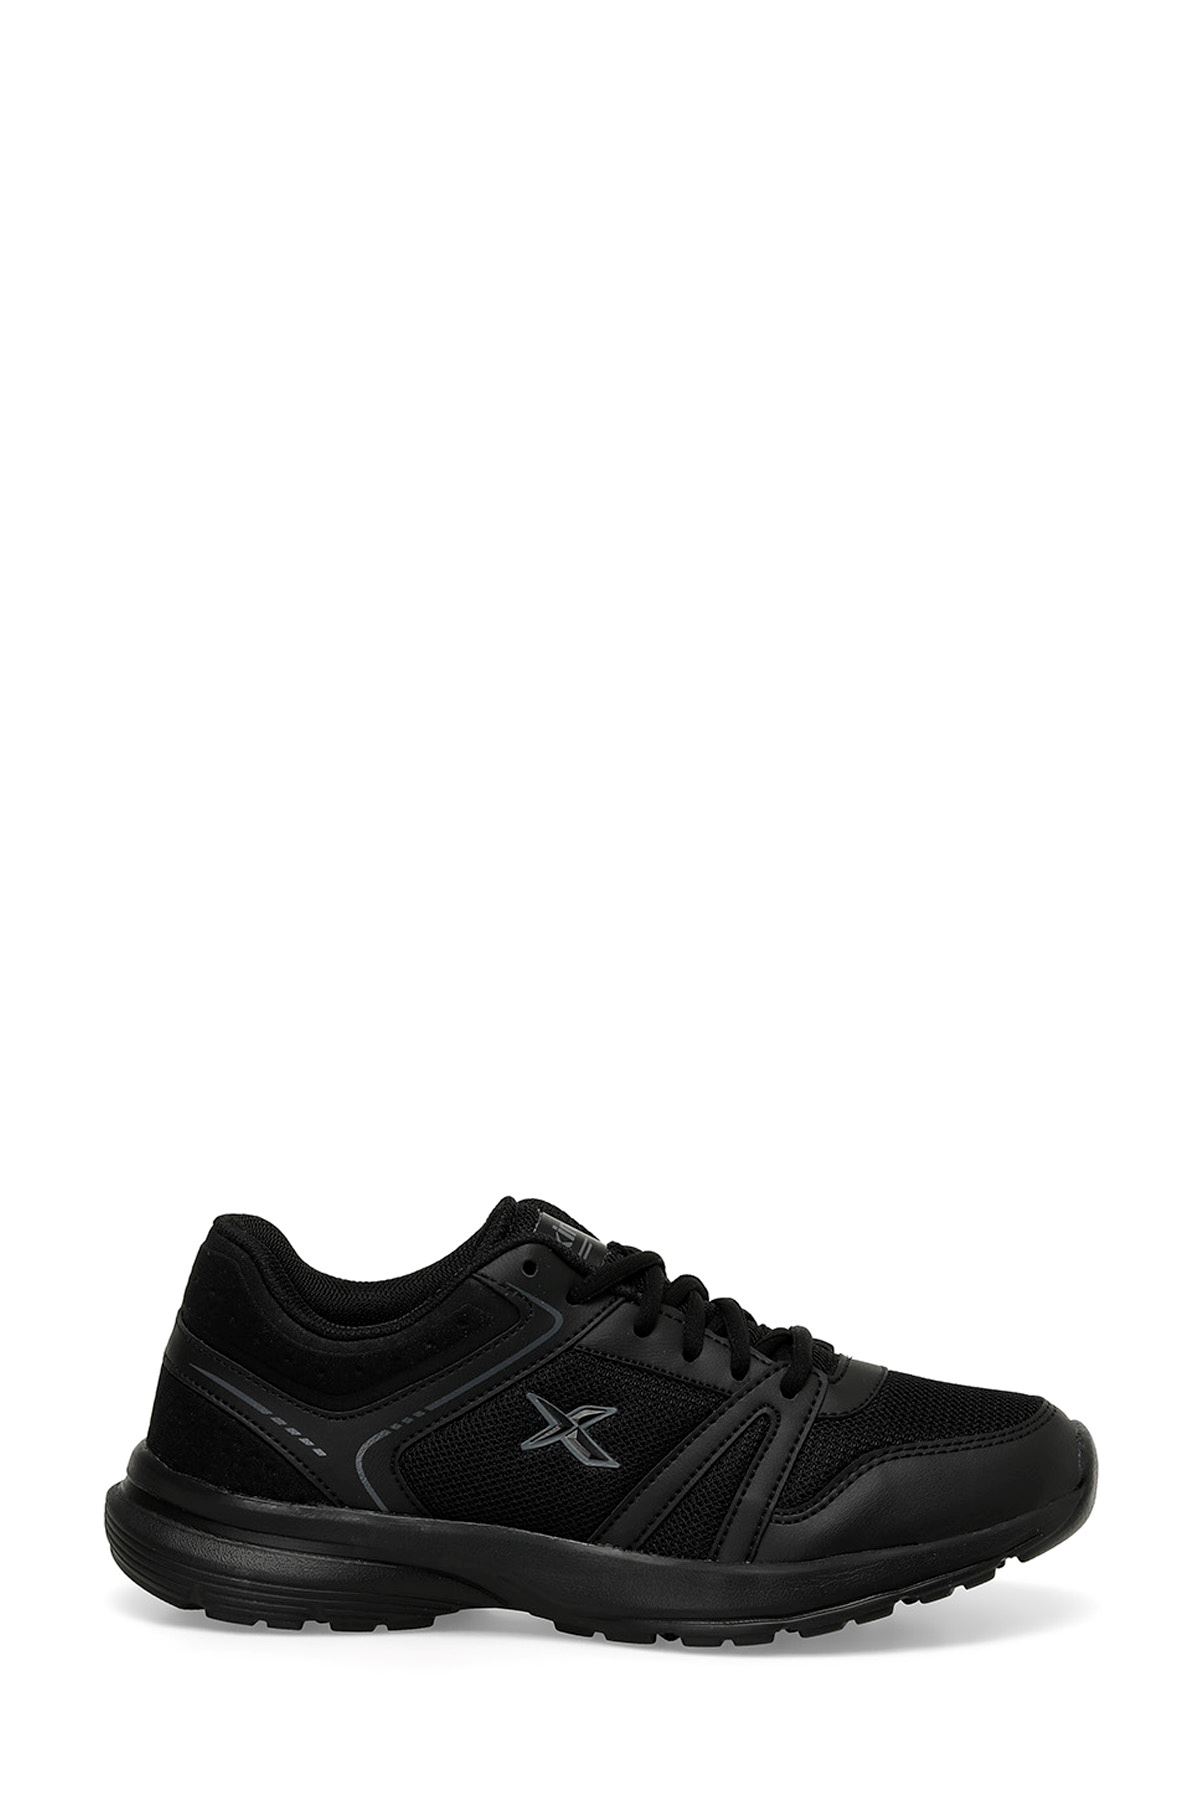 Mıton Tx 4Fx Kinetıx Erkek Siyah Spor Ayakkabı - 101487990